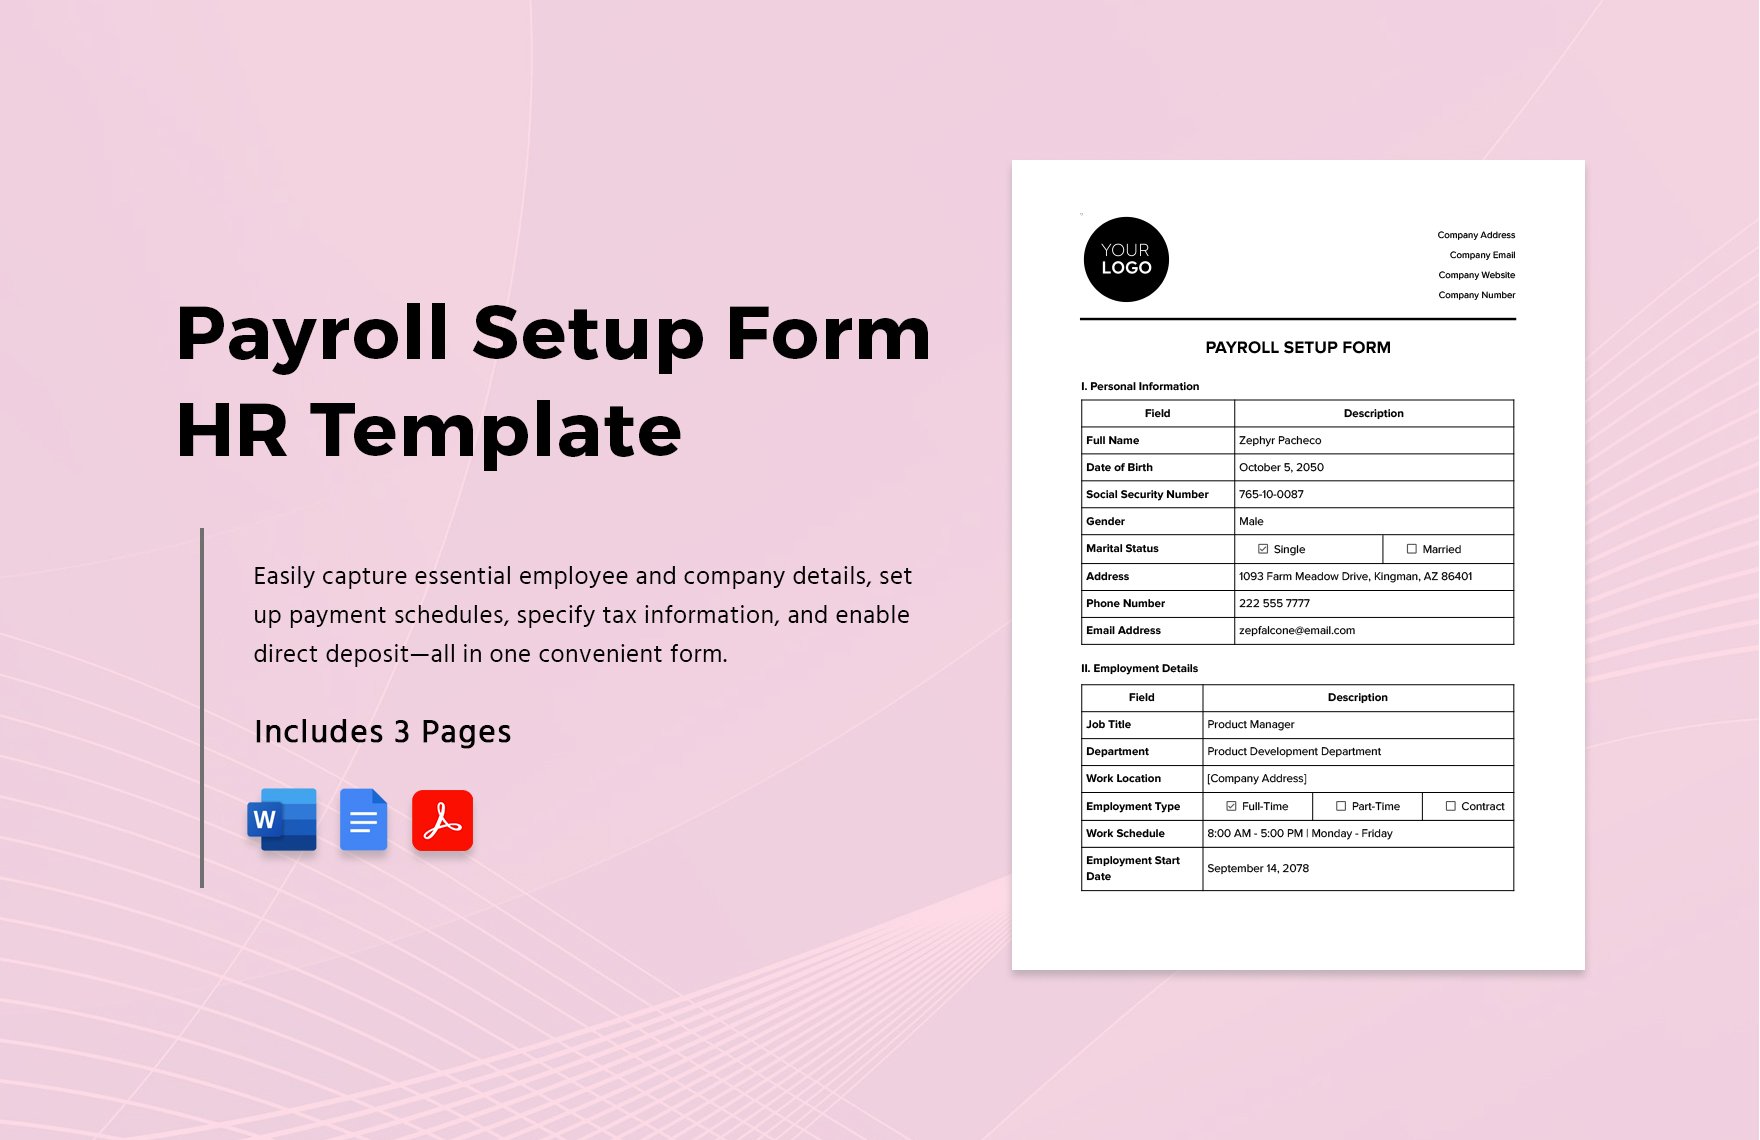 Payroll Setup Form HR Template